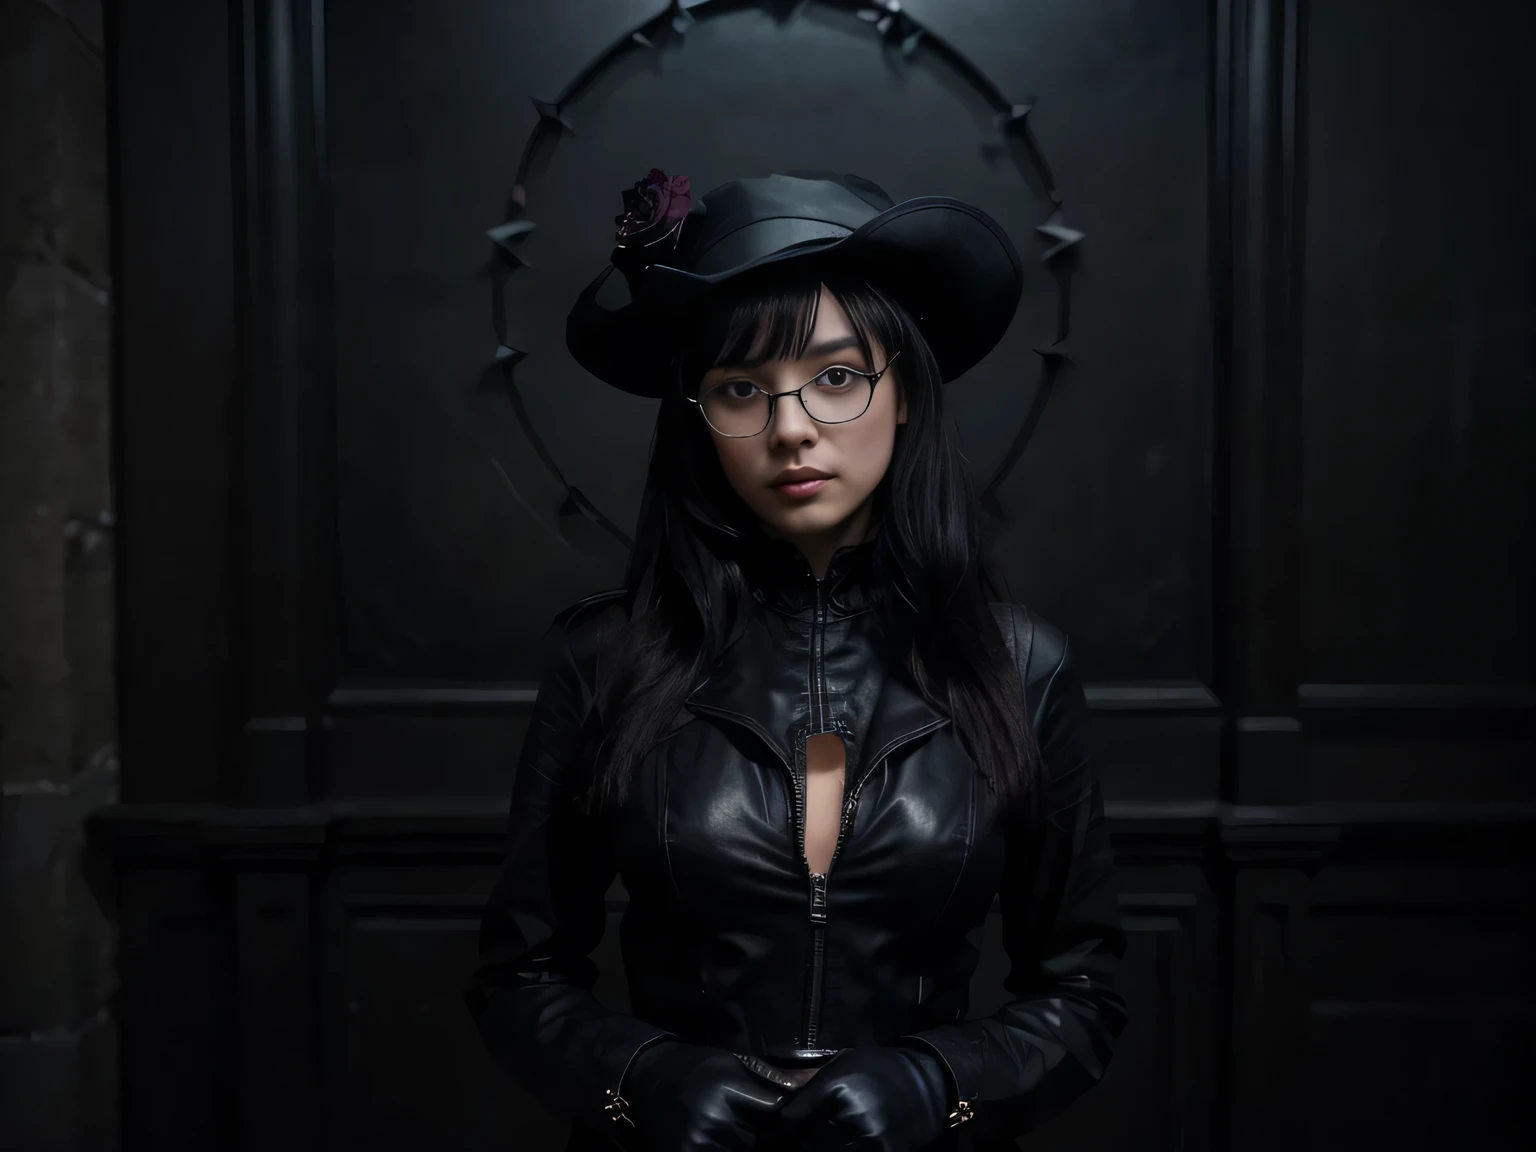 暗闇の周り，ベティ・ペイジは視聴者の方を向いて立っている，彼女のイメージは全体的に真っ黒だ(暗闇の中の少女、ジッパー、暗闇の中の海賊船など, 暗い要素を含む)，彼女は黒いスーツを着ています，そして黒い帽子をかぶって, 黒い眼鏡, 黒いブーツ, 黒い手袋, 黒のレザースカートと黒のドレス。 (頭からつま先まで黒一色の服装, コウモリ型の帽子, レザージャケット, 戦闘ブーツ, スパイク付き手袋)。 画像品質は非常に高い (最高品質), 4K, 8k, 高解像度, 傑作: 1.2） ， きめ細かな質感と抜群の透明感 ， 上品でリアル, 絵を描くのが好き (超詳細, 写実的な : 1.37) 。背景は暗い，少女の長い黒いドレスの強いコントラストを強調している。The lighting effect of the whole picture is 柔らかい、神秘的な(柔らかい,美しく神秘的な照明)。彼女のまばゆいばかりの黒いメイクと細心の注意を払った,細くて澄んだ目がある(美しい目のディテール),彼女の唇も美しい,彼女は特に魅力的に見える (美しい唇のディテール)。彼女の背の高い体型と優雅な姿勢は彼女にとても自信と自立心を与えている。。彼女の姿勢は優雅なステップとなる 、ブラックローズガーデンで踊ったり立ったり。 舞台庭園には暗闇がある、神秘的な atmosphere，黒いバラ(咲き誇る黒いバラ)催眠術のような魅力を放つ。絵全体は黒のテーマを強調している,神秘性と魅力のあるキャラクターを表現する(暗くて神秘的な環境にいる少女, 真っ黒です) 。この絵画は暗い雰囲気と詳細な人物像を組み合わせている, これにより、ユニークで魅力的な芸術効果が生まれます.。アートスタイルはダークなものになることもある, 重い, ゴシックロマンスまたは探偵小説.  色調は主に黒, 濃い赤を加えることもできます、レイヤーにマッチするダークブルーとパープルの色合い。